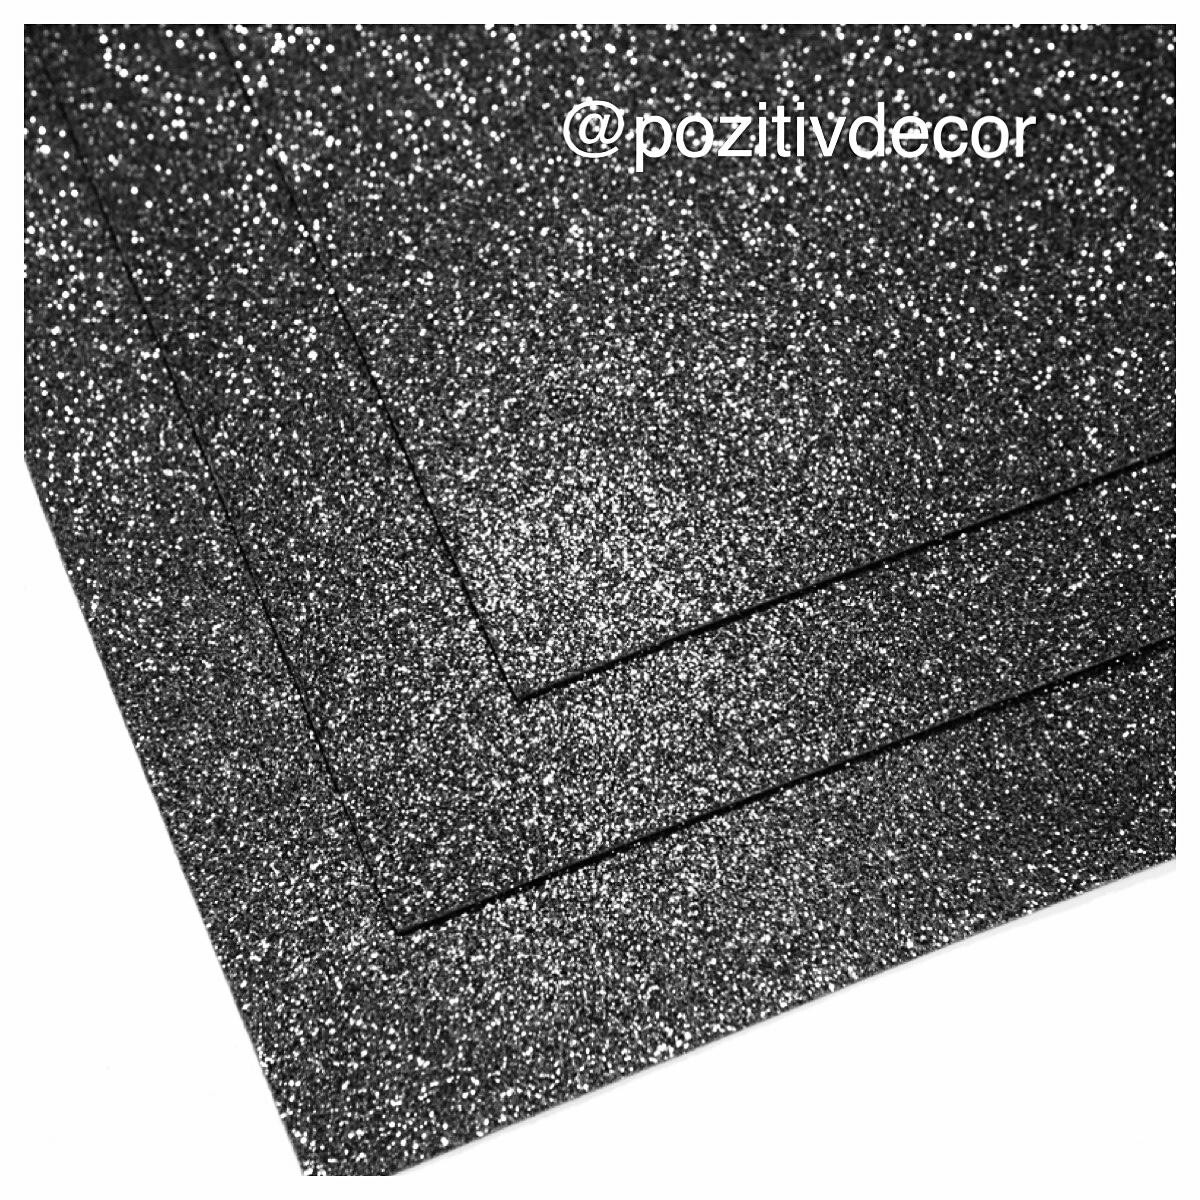 Фоамиран глиттерный - толщина 1,5 мм , размер листа 60/70 см.
Цвет - черный